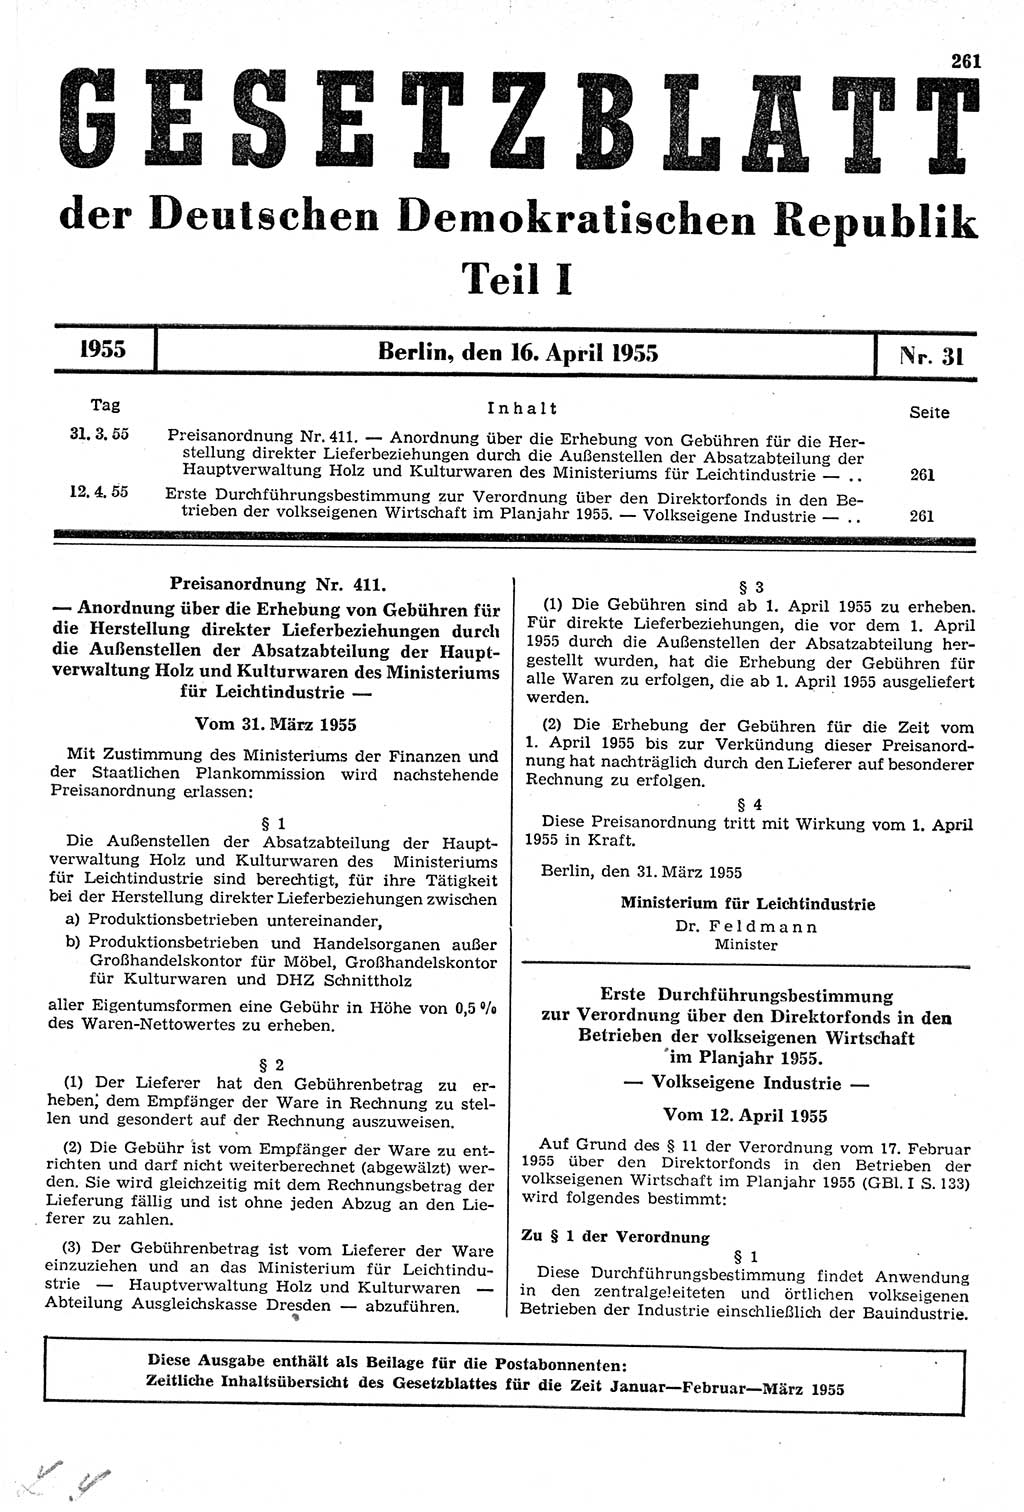 Gesetzblatt (GBl.) der Deutschen Demokratischen Republik (DDR) Teil Ⅰ 1955, Seite 261 (GBl. DDR Ⅰ 1955, S. 261)